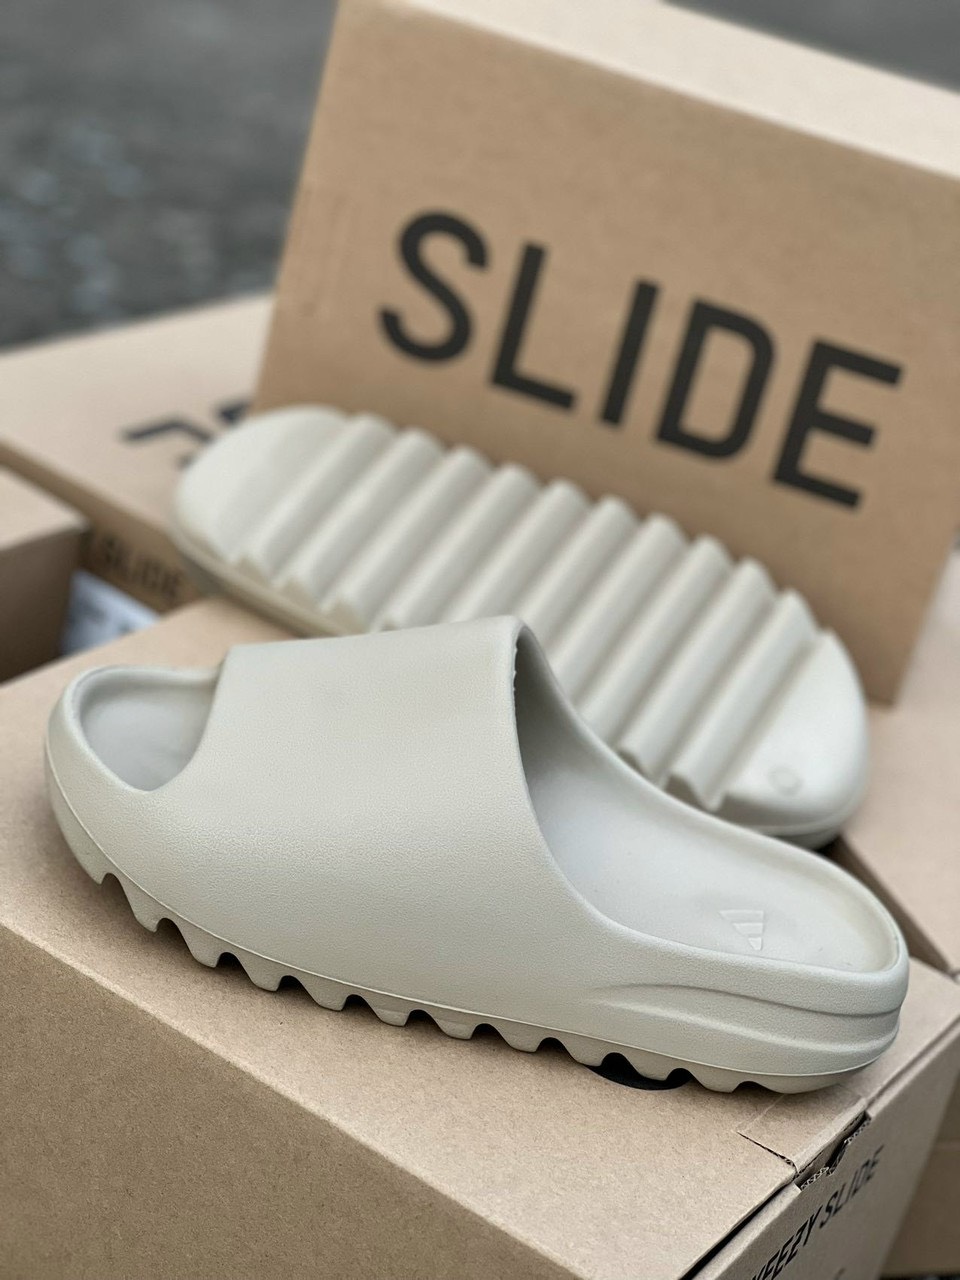 [CÓ 3 MÀU] [FreeShip] [Rẻ vô địch] [Có sẵn] [Giá hủy diệt] [Ảnh thật] Dép nam nữ Adidas Yeezy Slide - Full Box - Hàng chuẩn - Made In China Đập nổi